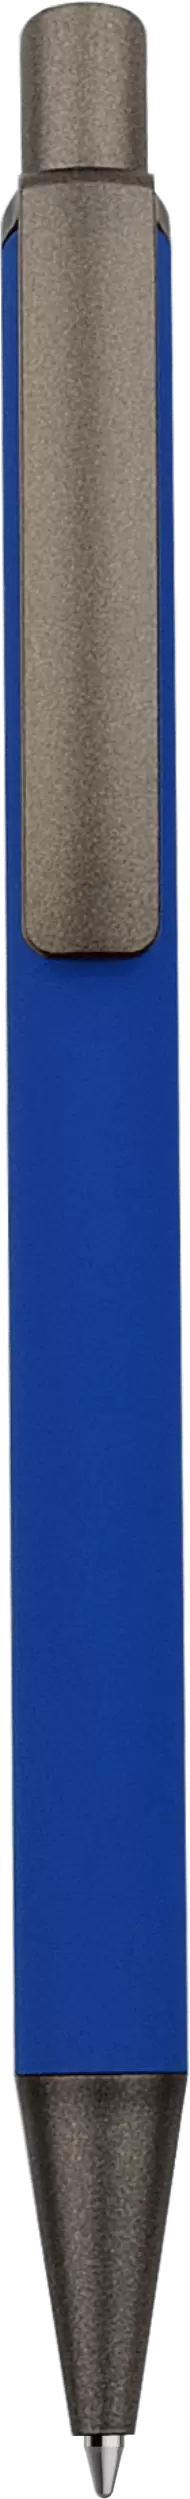 Ручка KIVI SOFT TITAN Синяя 2500.01